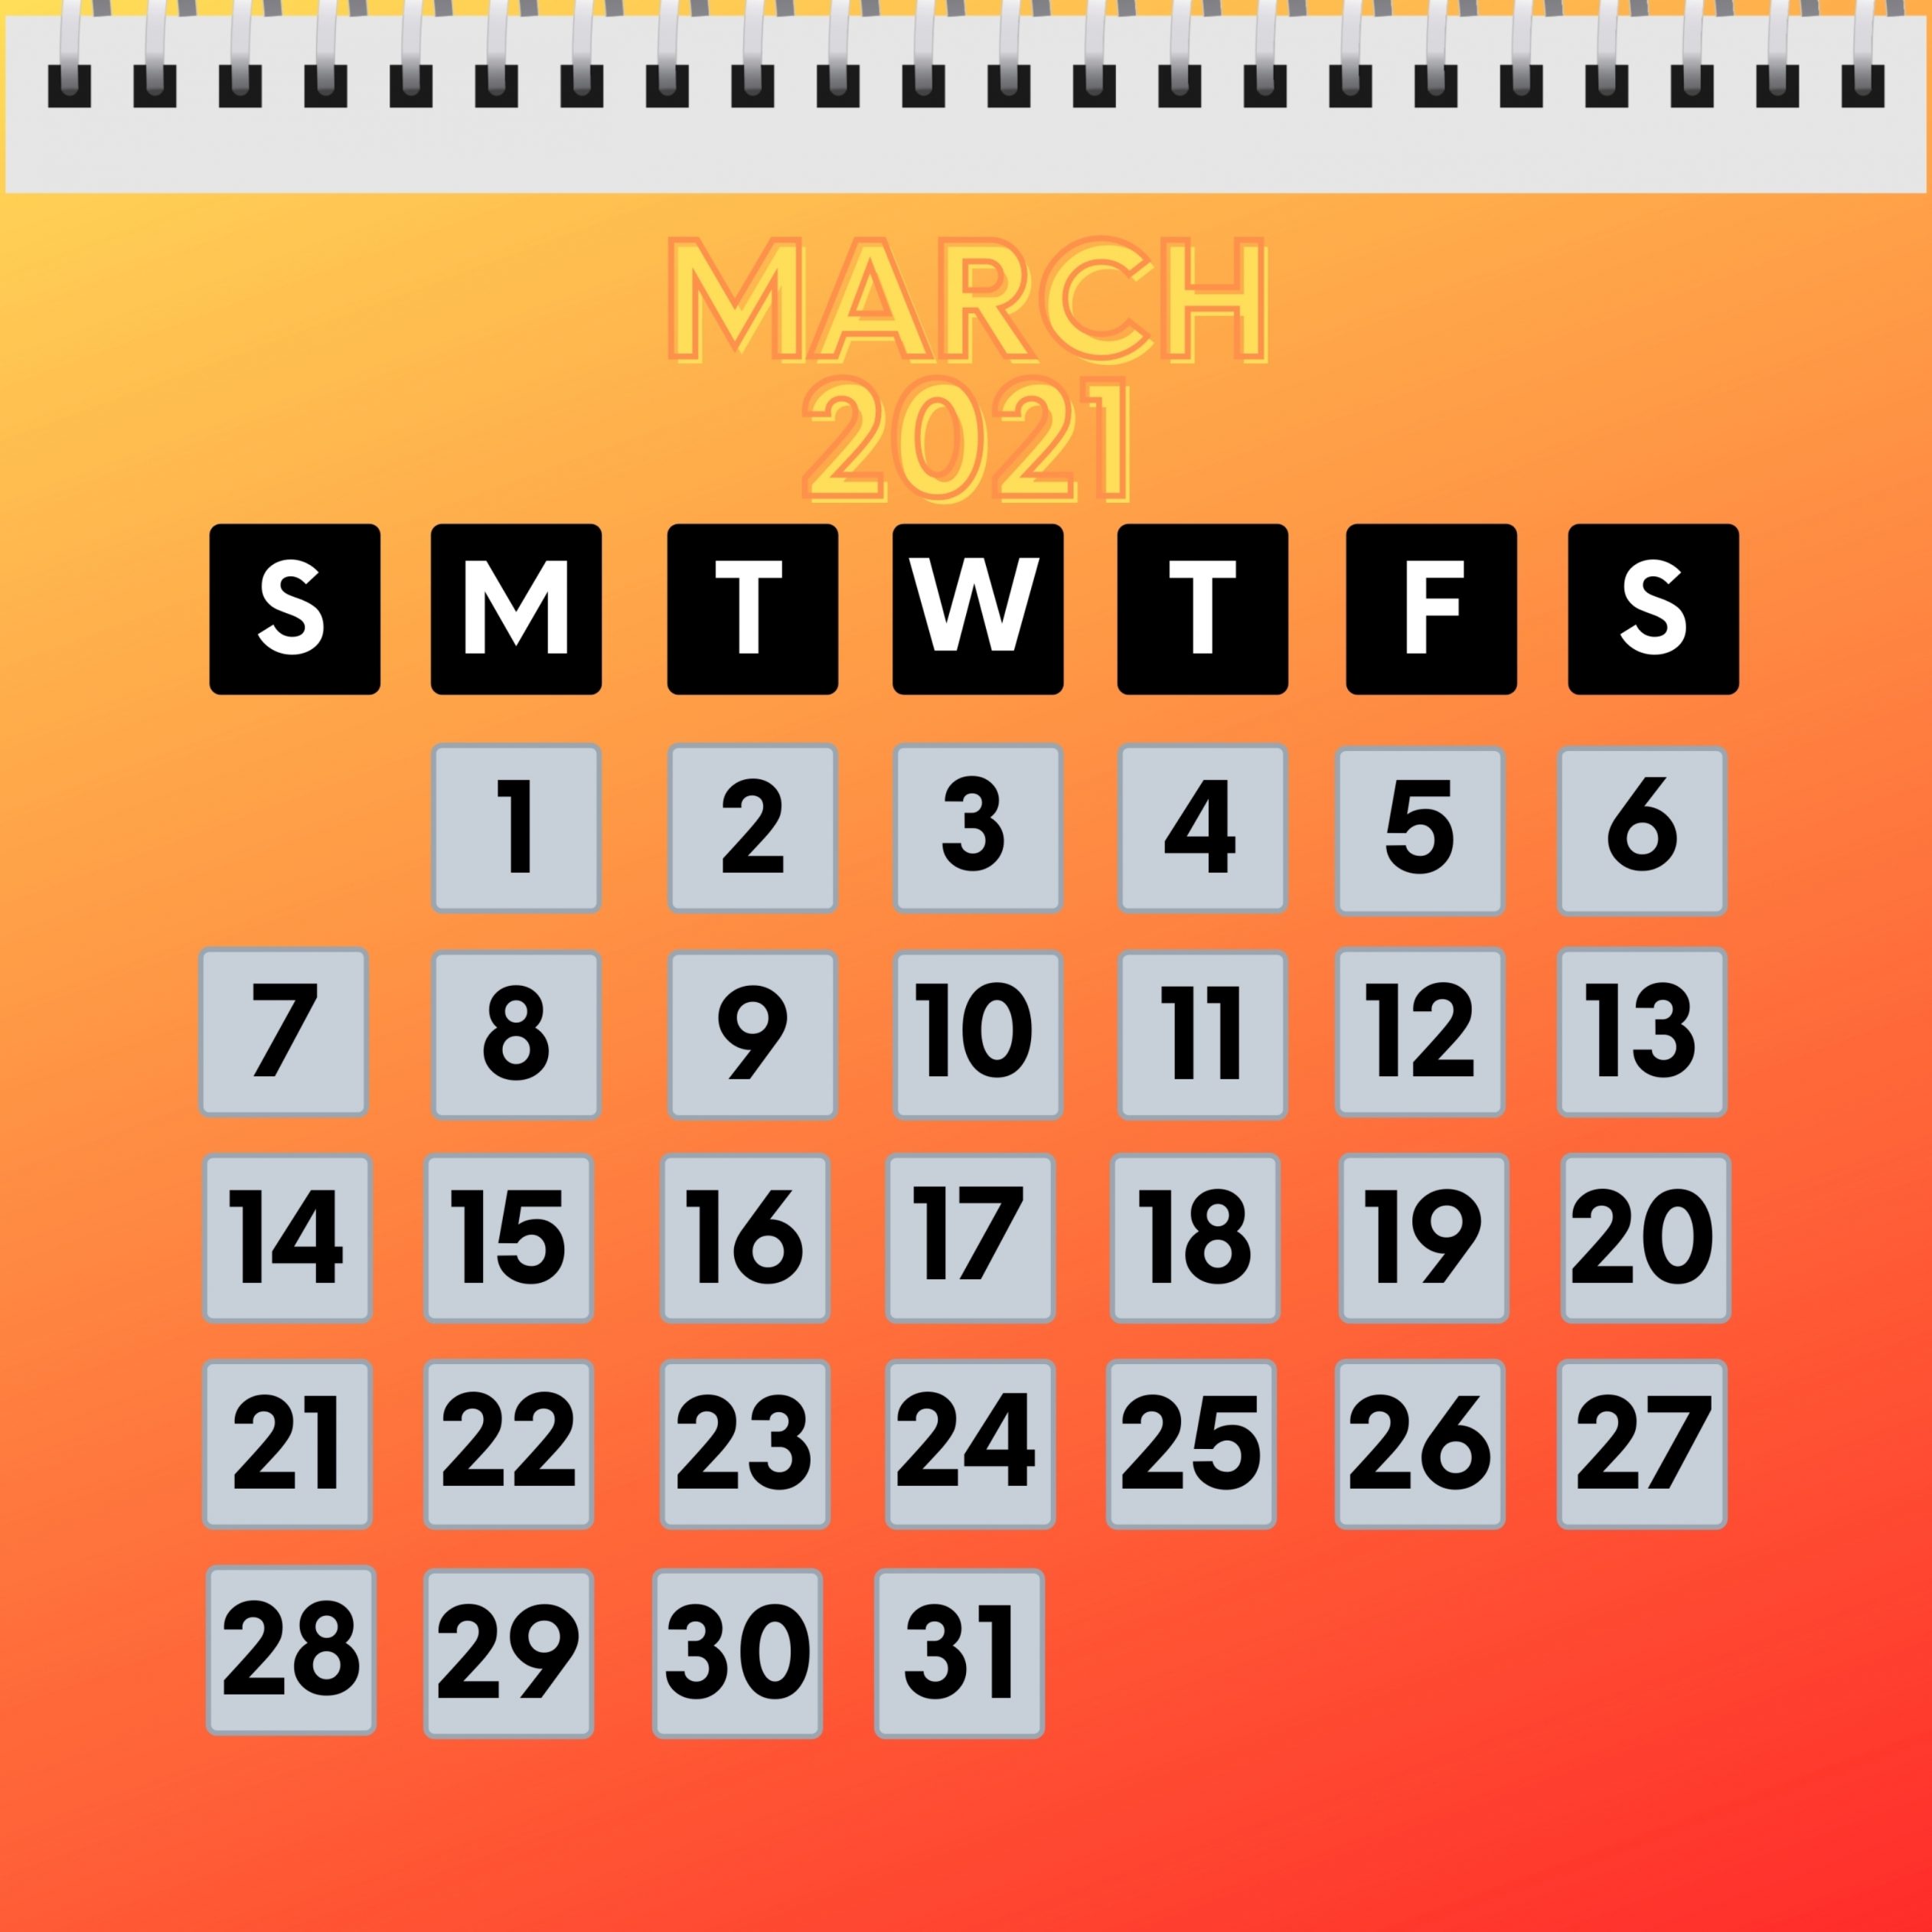 2524x2524 Parallax wallpaper 4k March 2021 Calendar iPad Wallpaper 2524x2524 pixels resolution